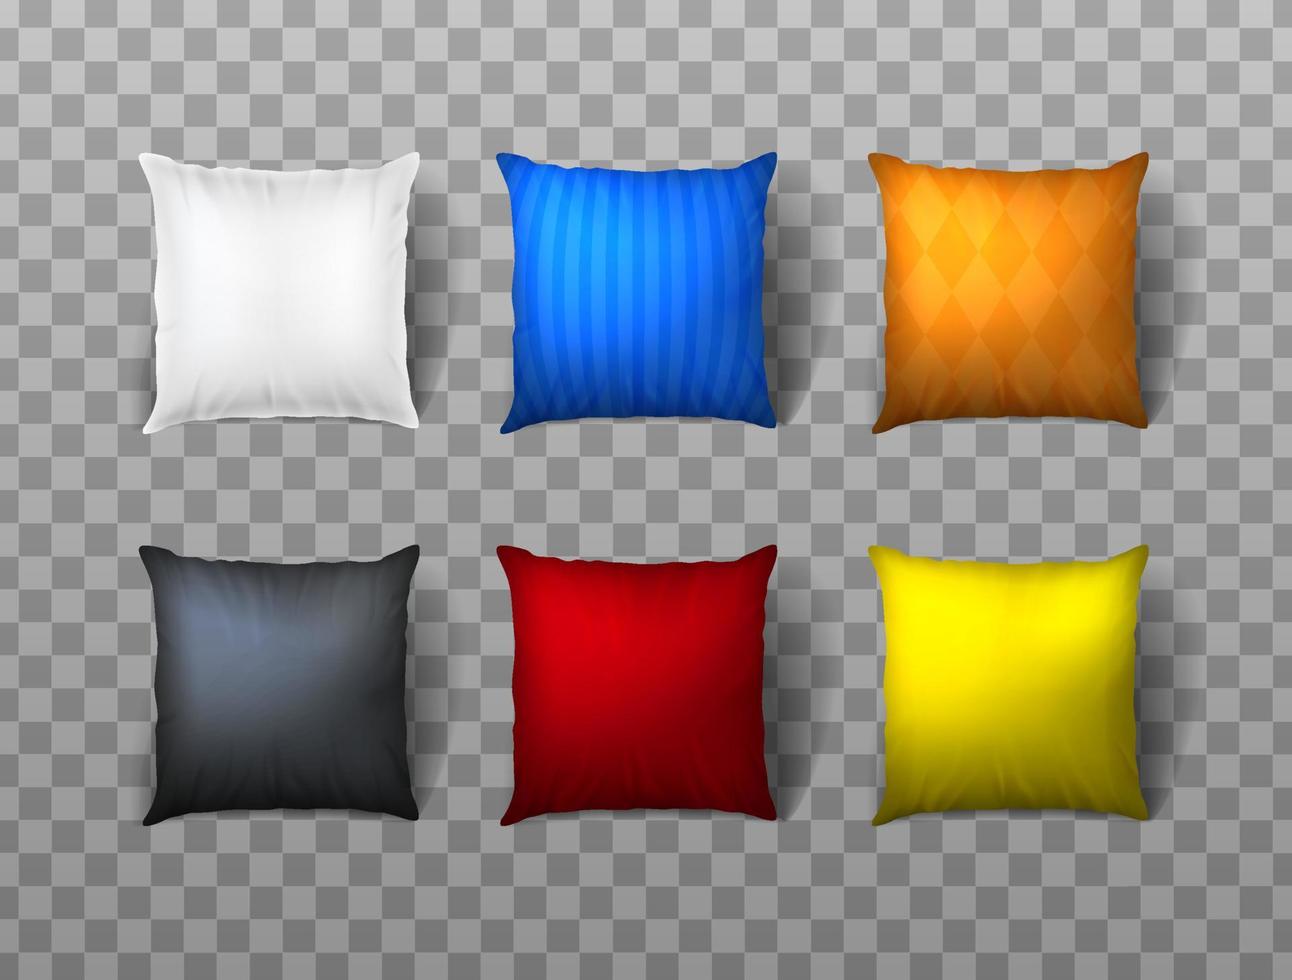 Conjunto de ícones de vetor realista 3D. almofada quadrada com padrões e cores diferentes.